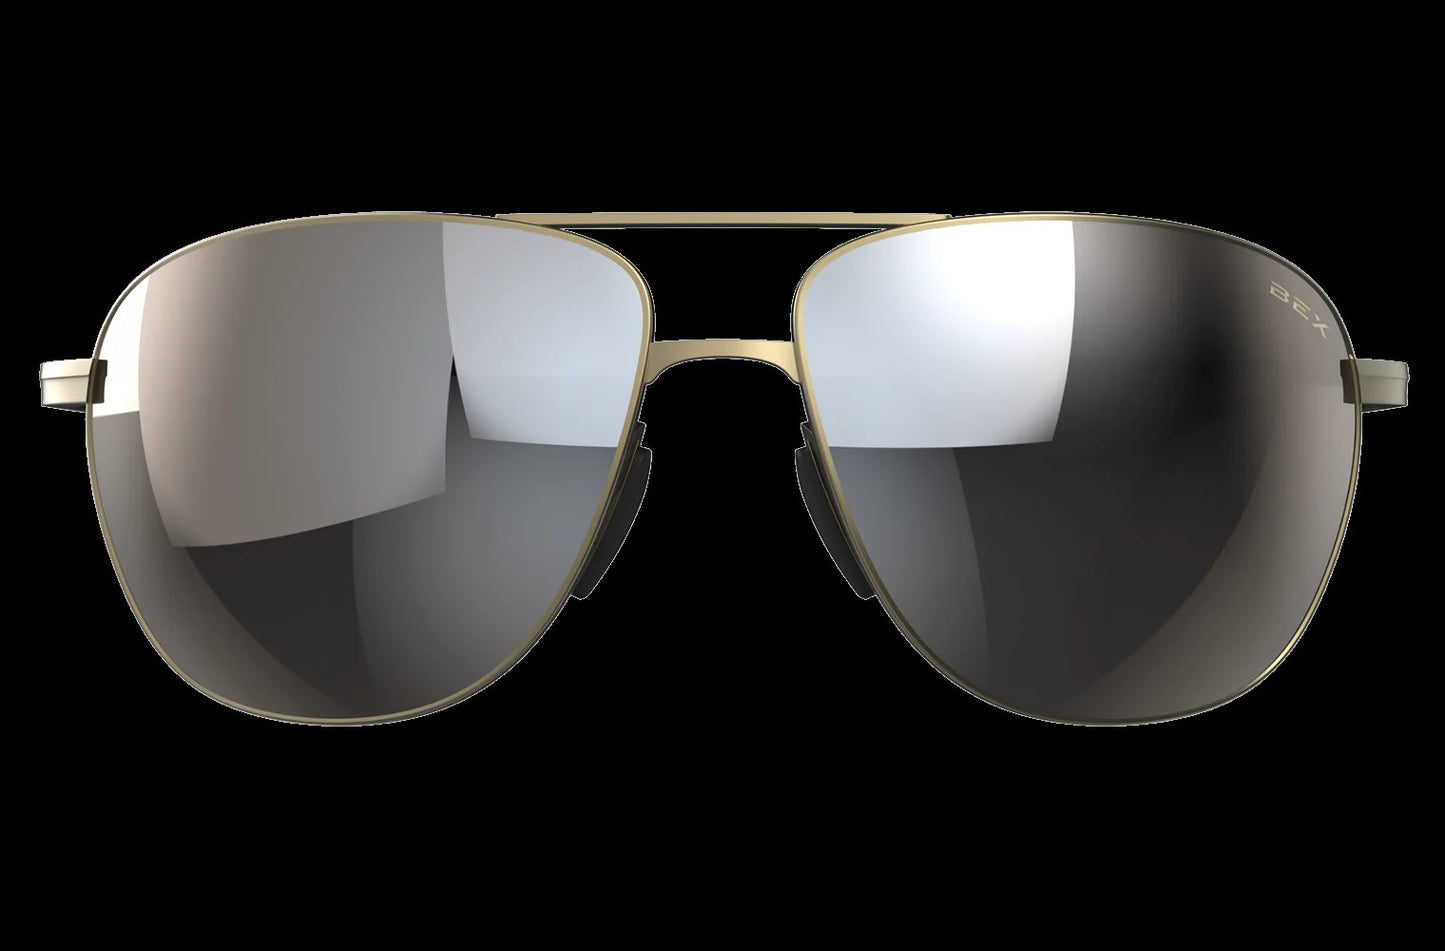 Bex Nova Sunglasses (two colors)